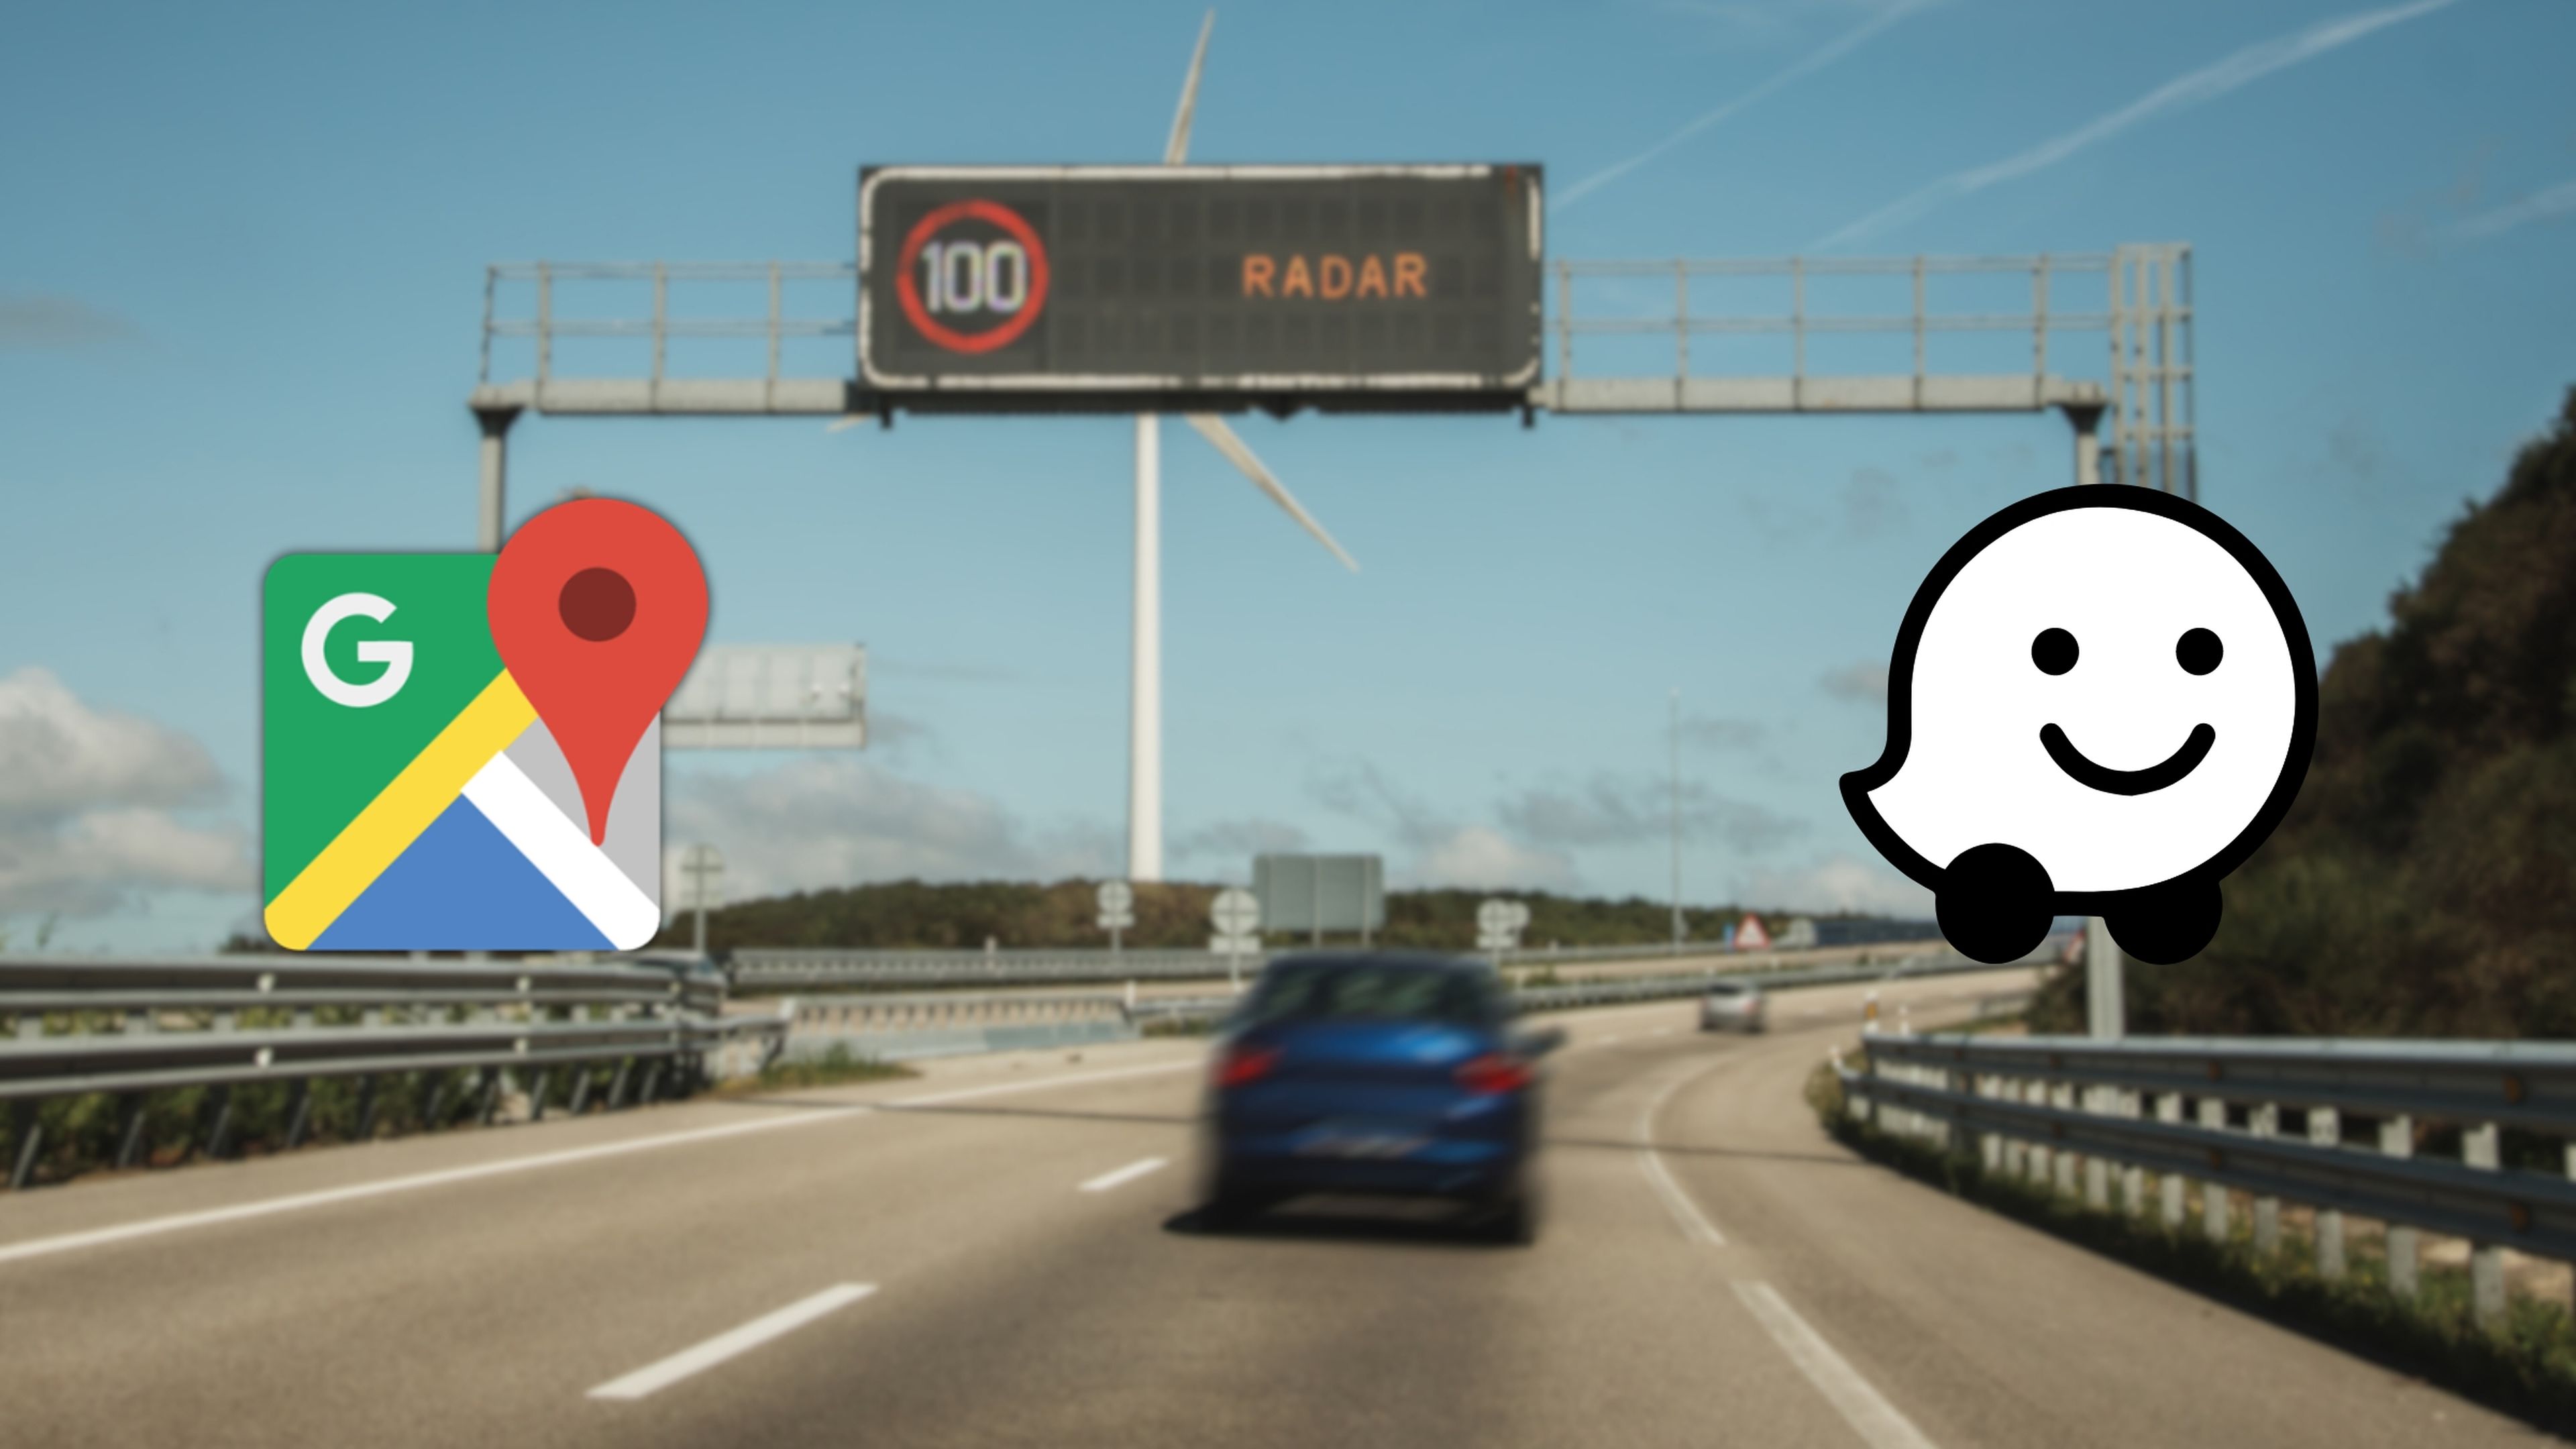 Qué es mejor para detectar radares: Google Maps o Waze